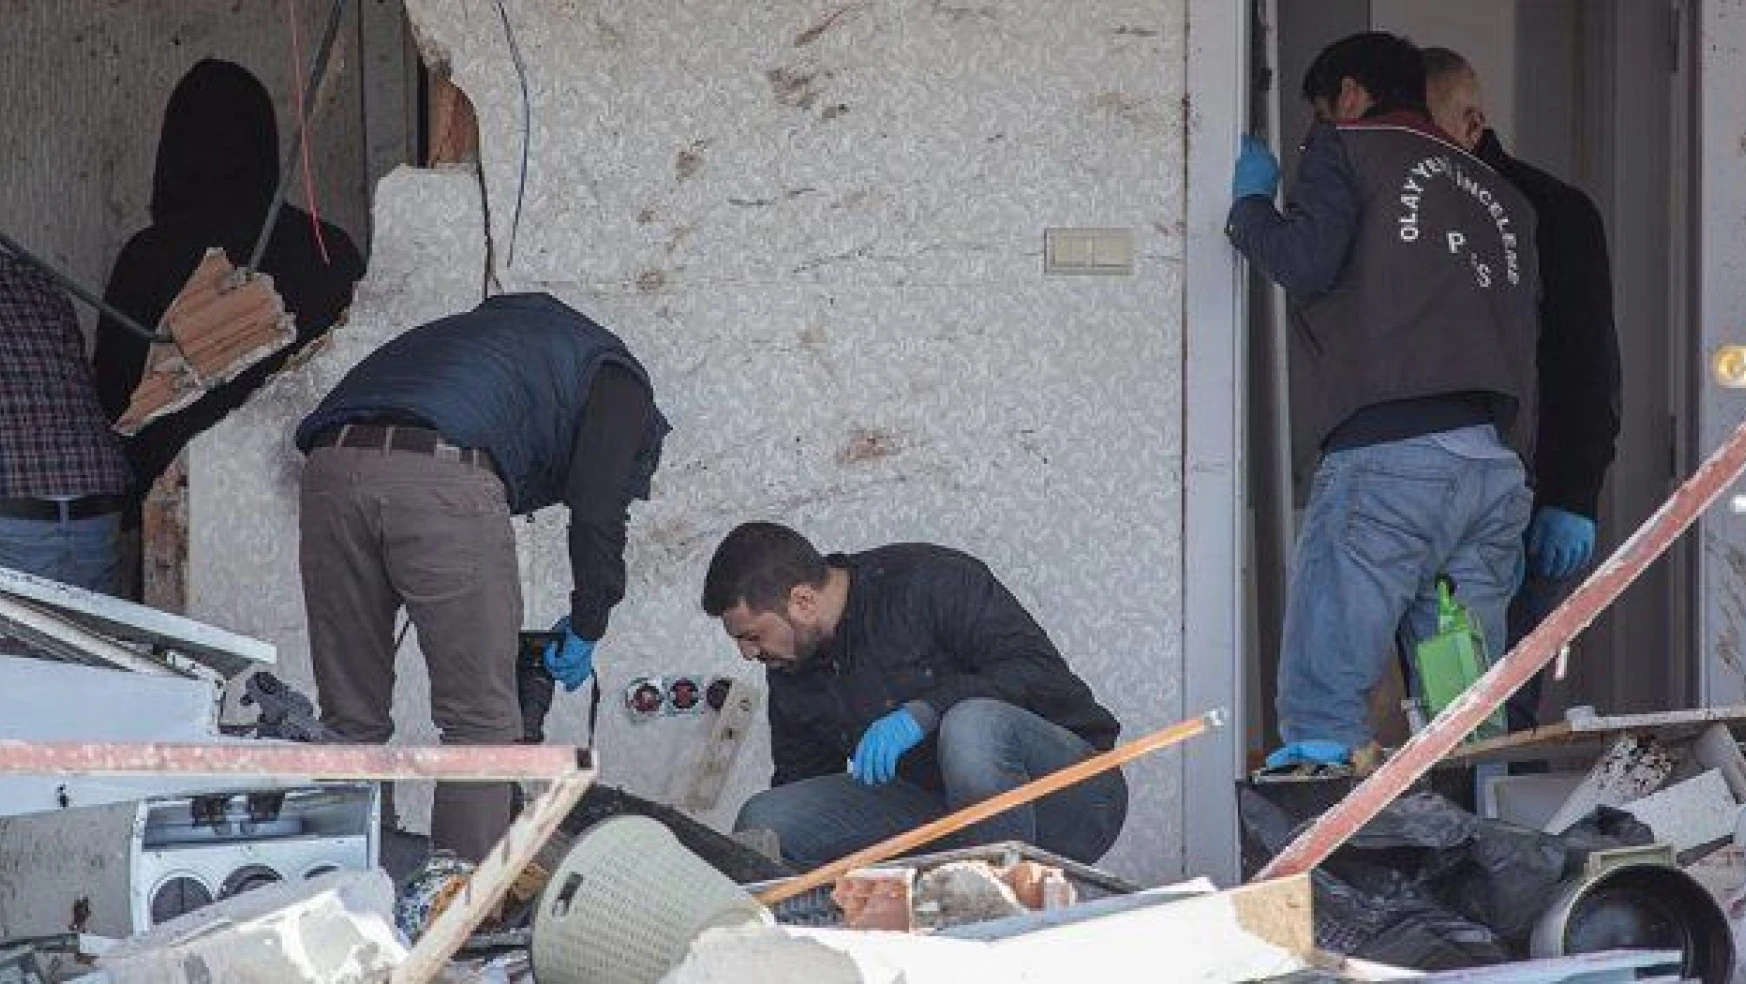 Gaziantep'te bombayı patlatan kişinin kimliği belli oldu